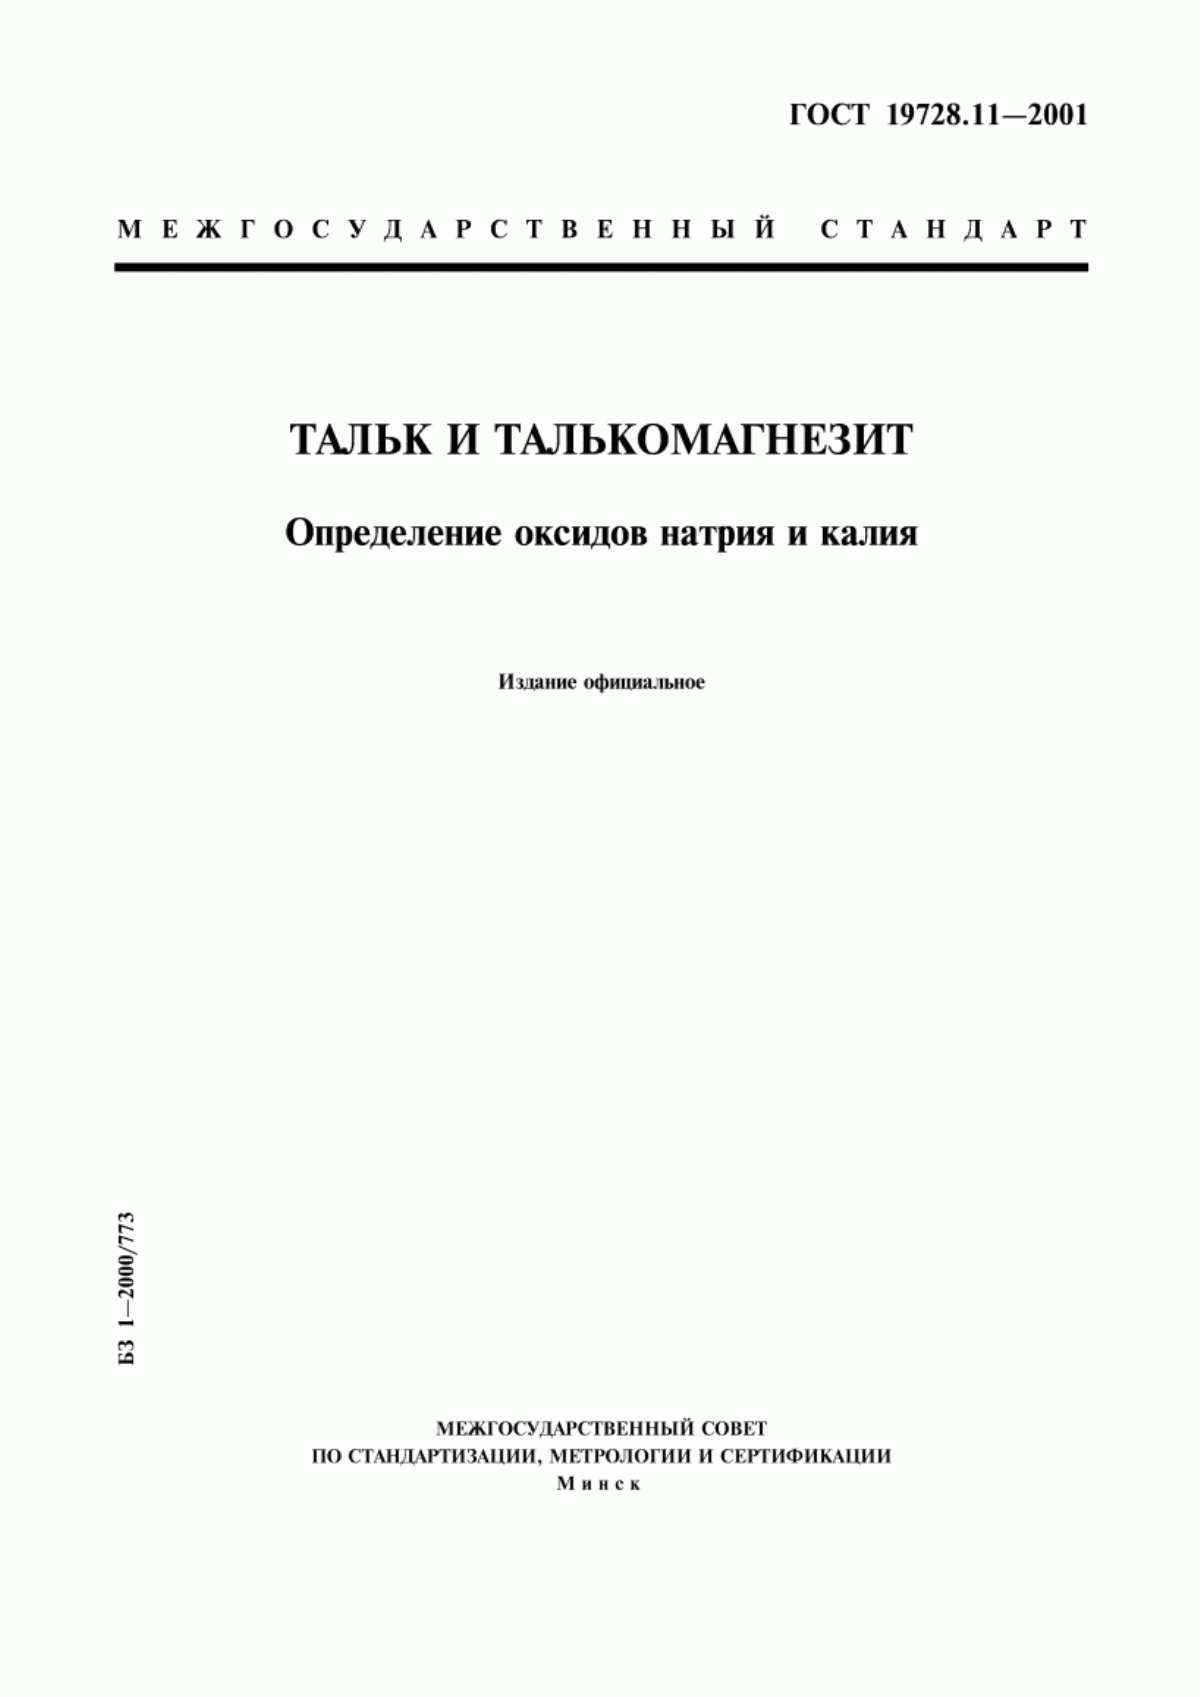 ГОСТ 19728.11-2001 Тальк и талькомагнезит. Определение оксидов натрия и калия